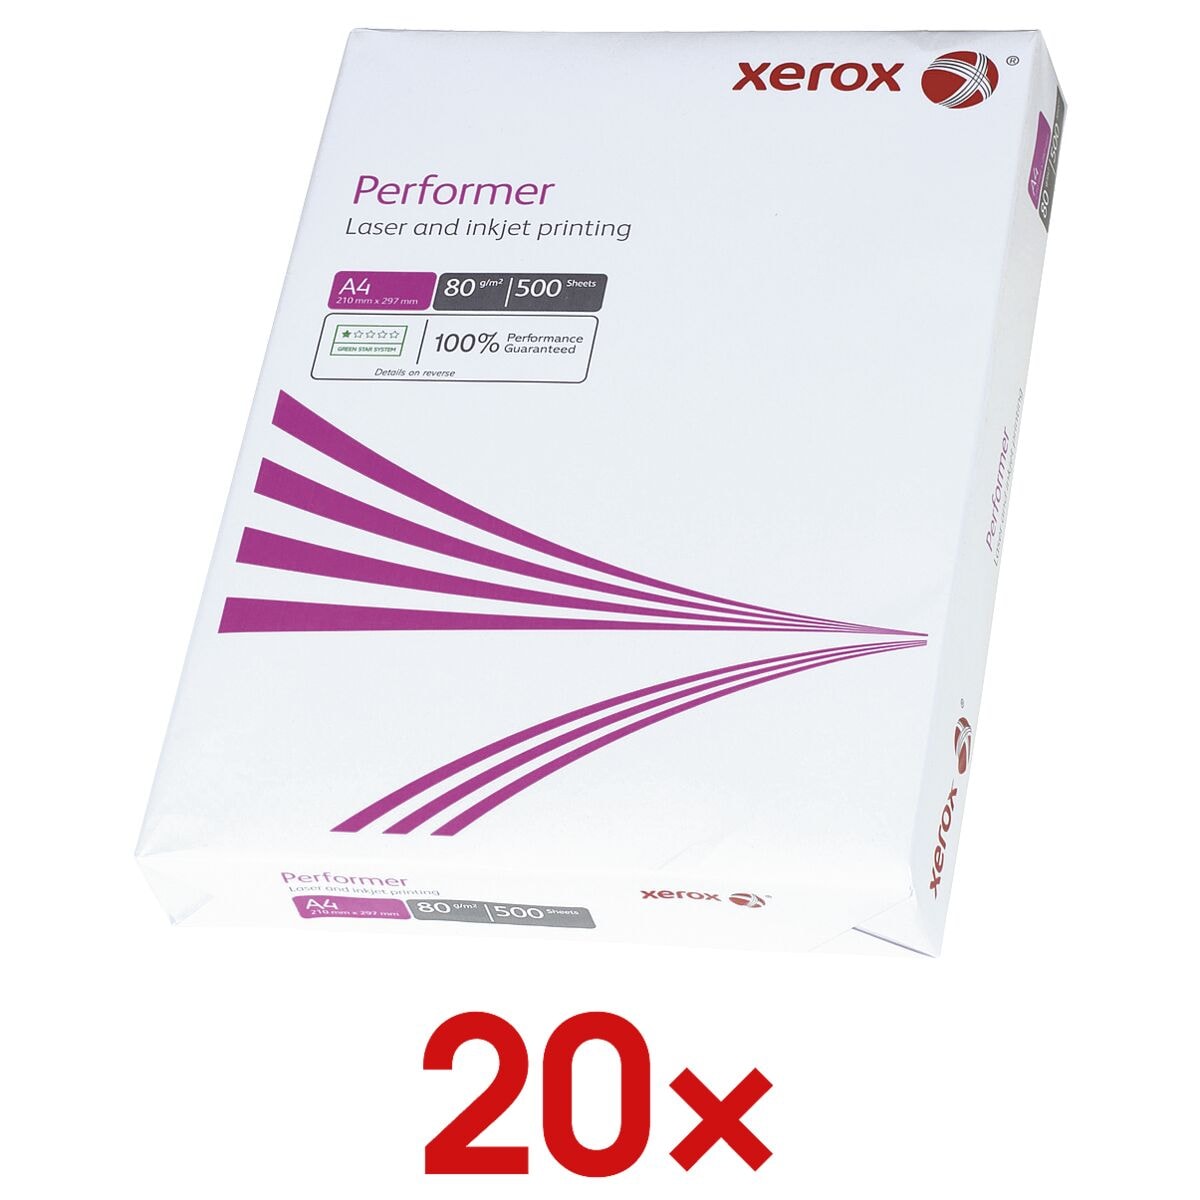 20x Kopieerpapier A4 Xerox Performer - 10000 bladen (totaal), 80g/qm